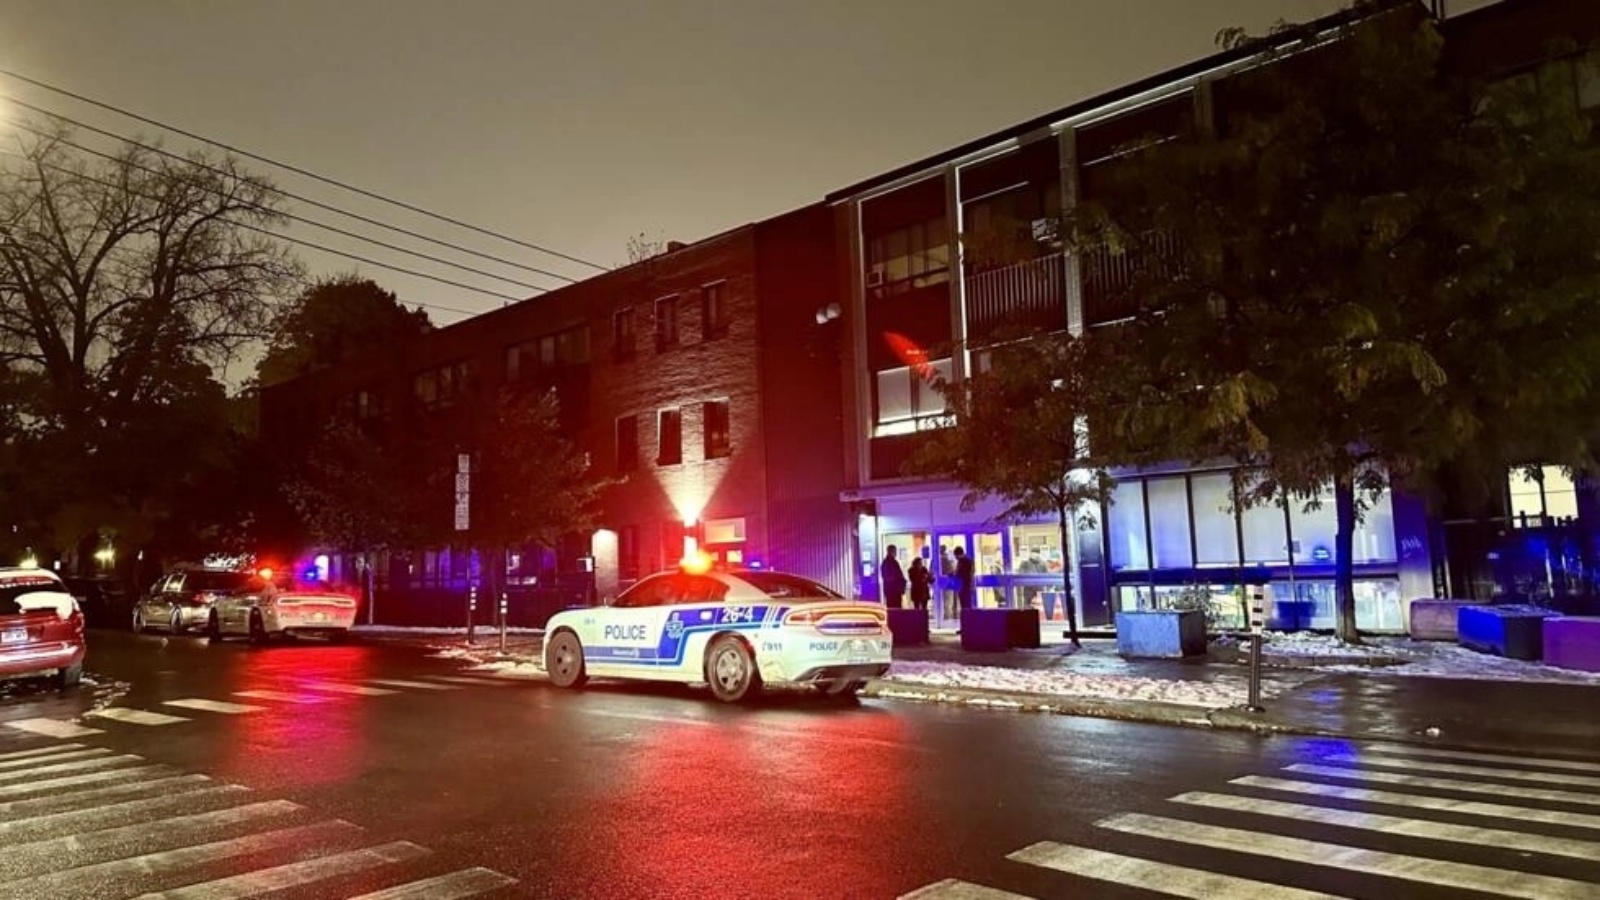 سيارات الشرطة أمام مدرسة تلمود توراة الابتدائية، إحدى مدرستين يهوديتين في مونتريال تعرضتا لإطلاق نار خلال الليل